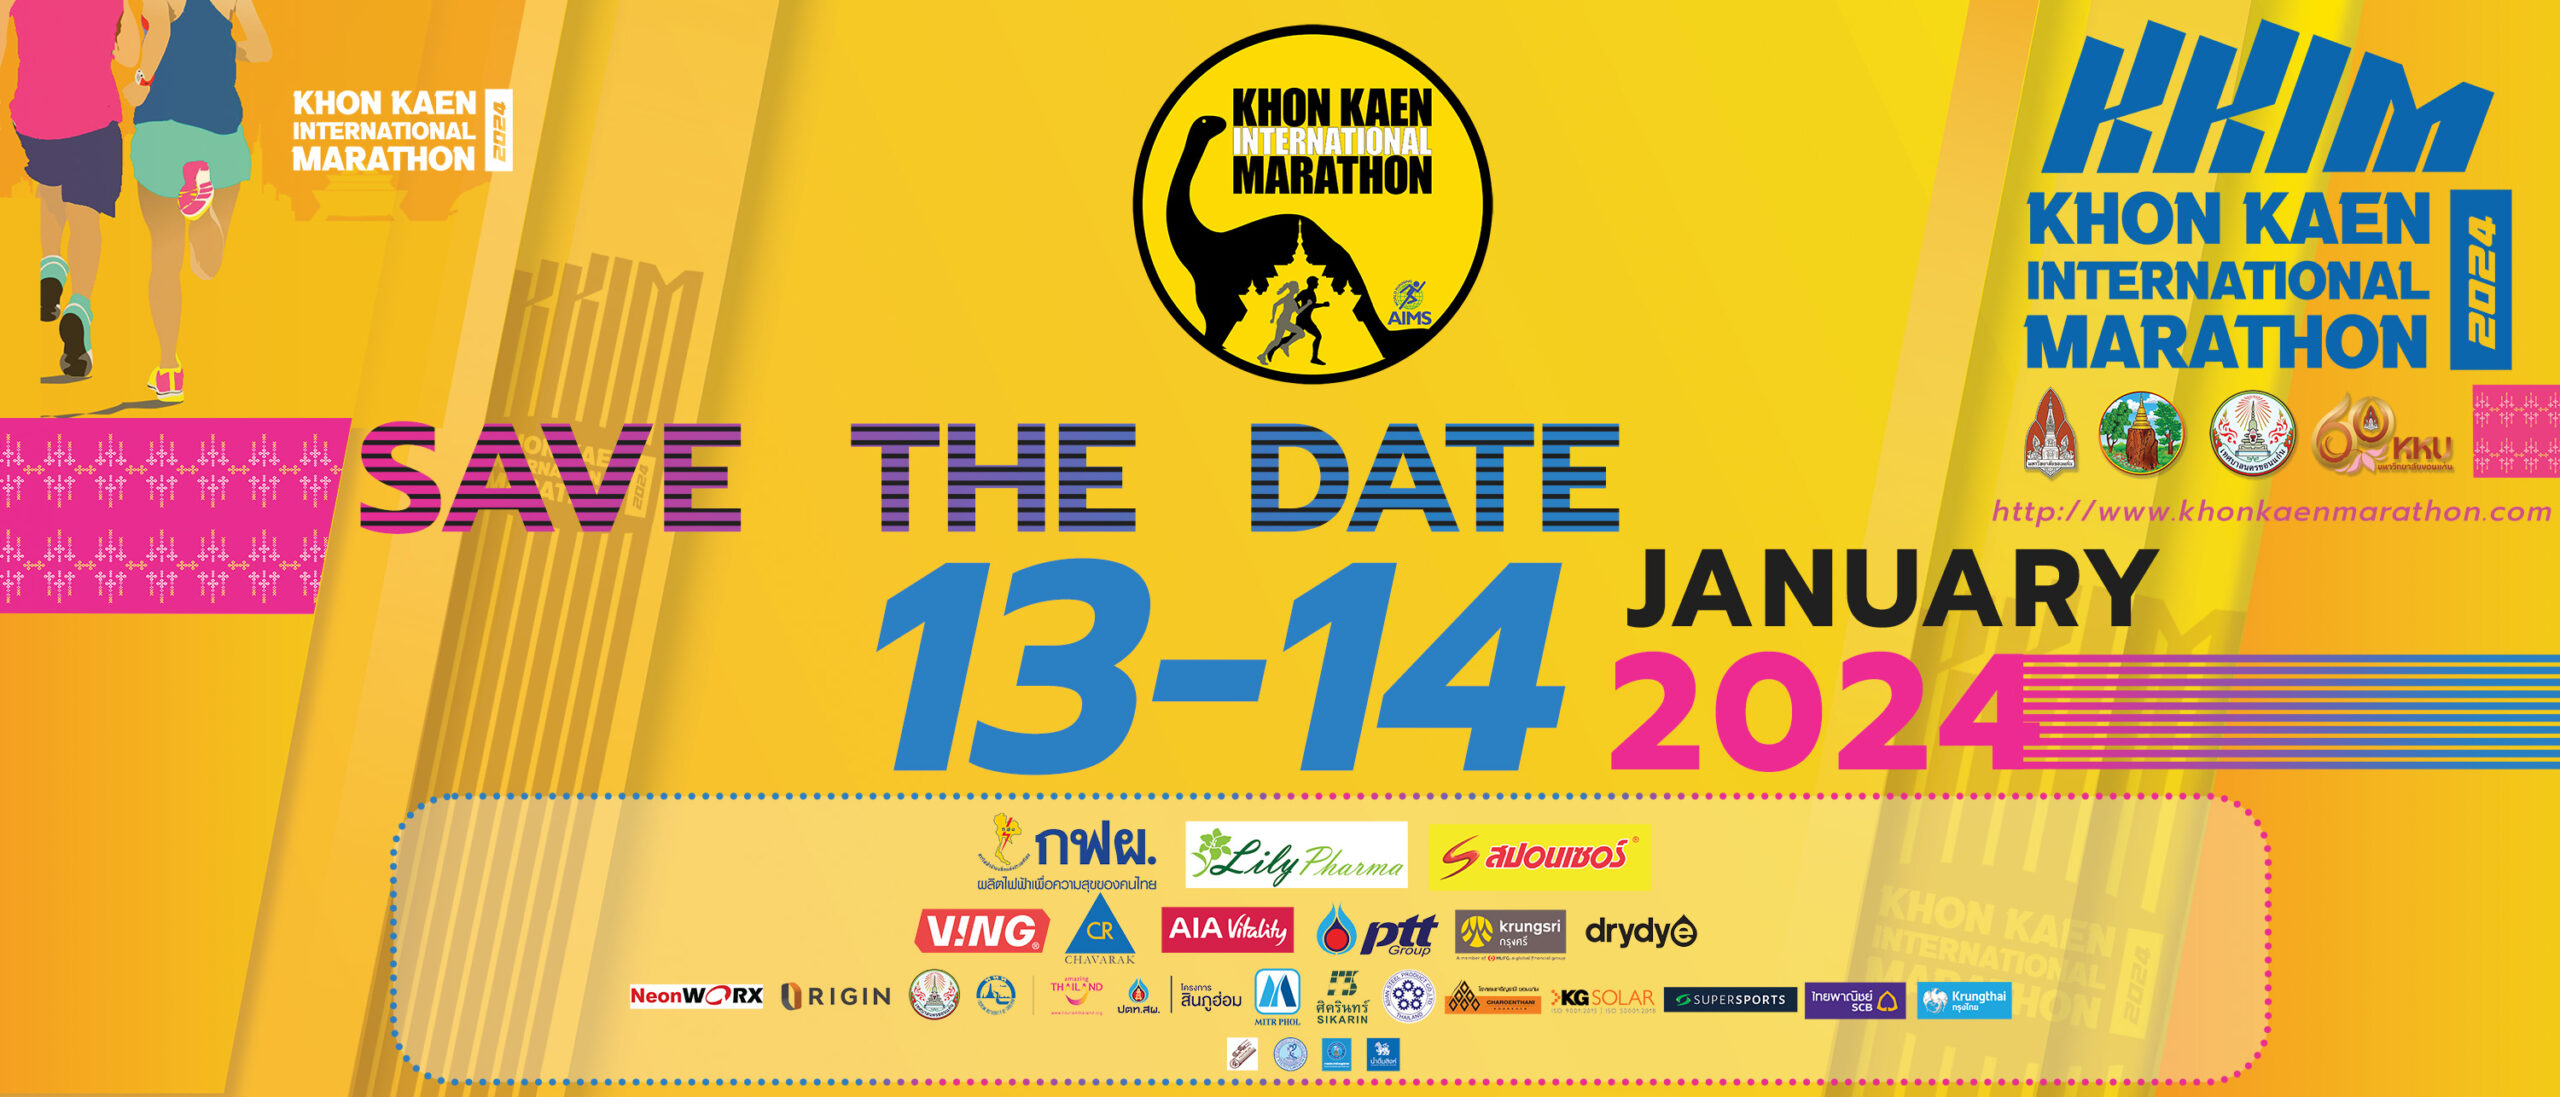 (c) Khonkaenmarathon.com